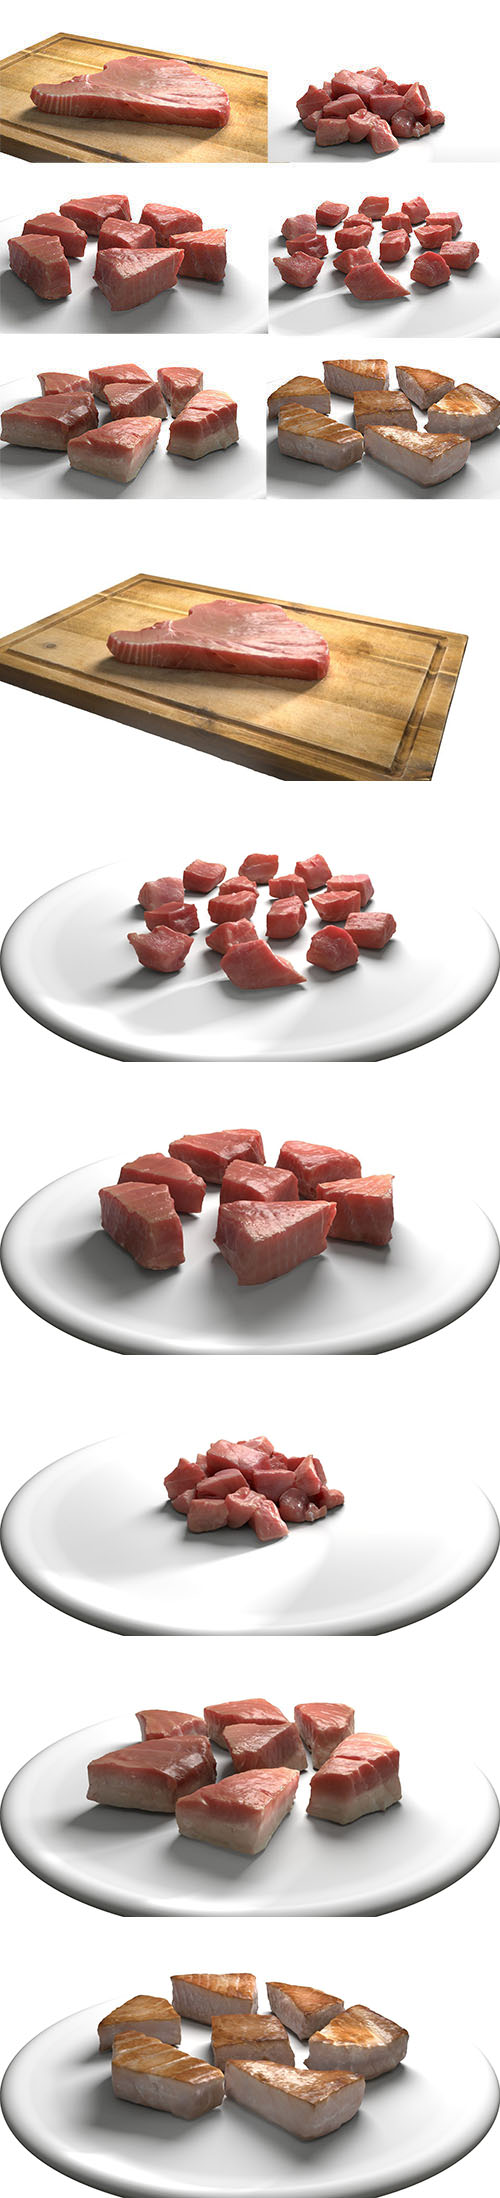 金枪鱼肉包-牛排生熟切碎低聚3D模型 (OBJ)